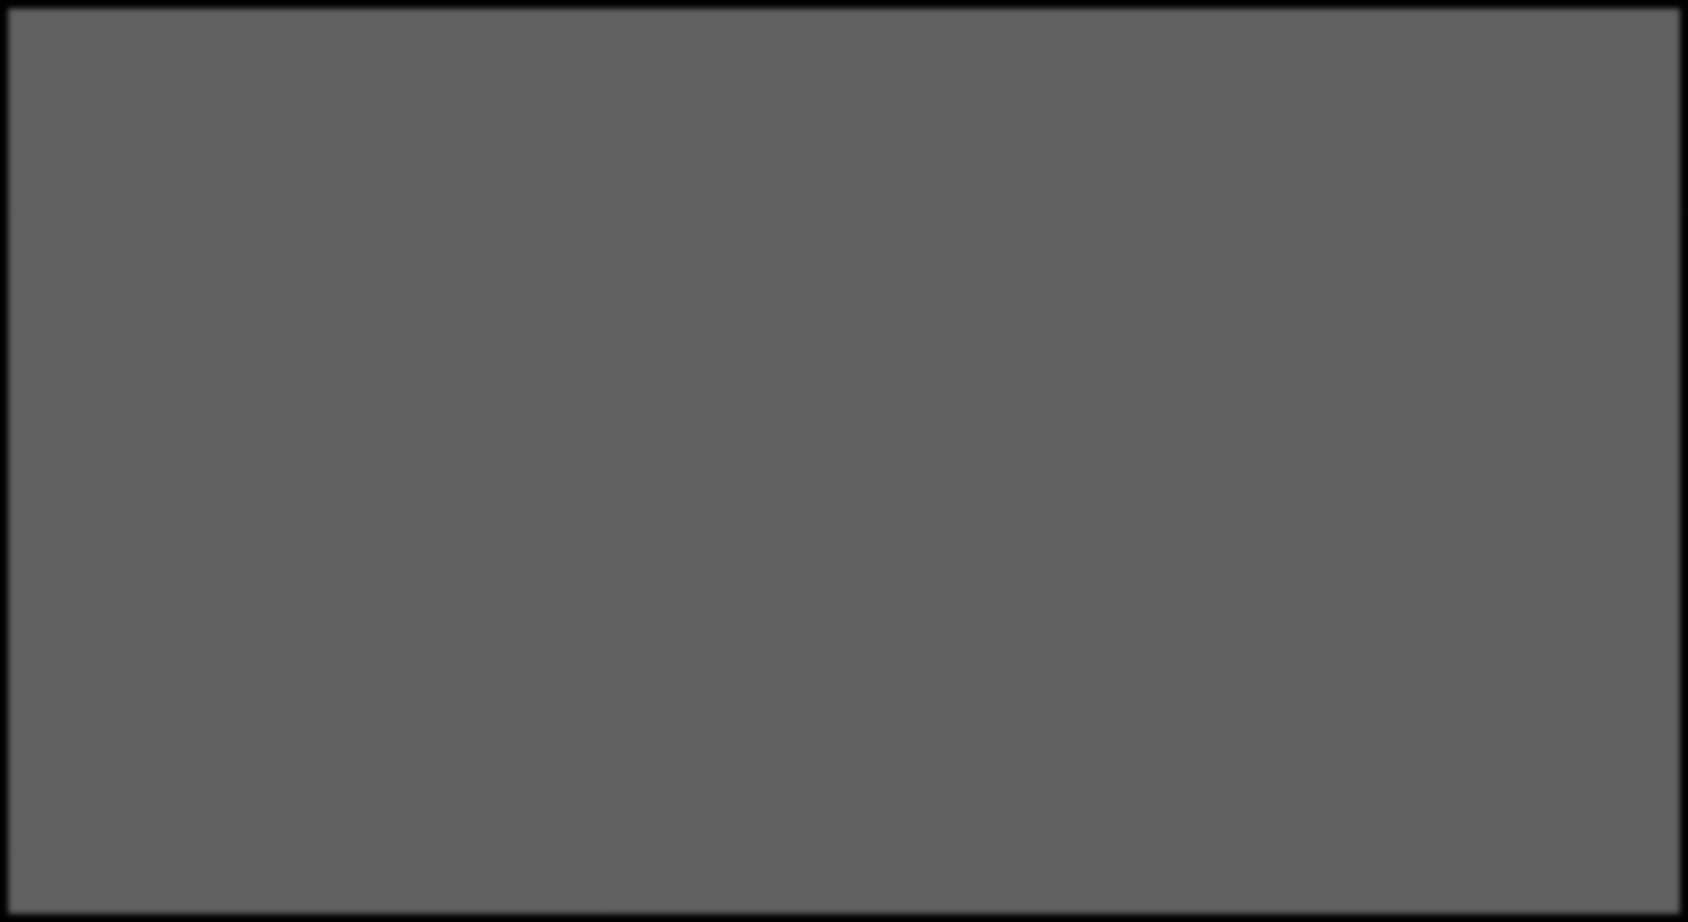 Polskie zbiory w Europeanie stan aktualny Dostawca metadanych Agregator metadanych Liczba obiektów w Europeanie Zmiana 202-02-08 202-0-6 Instytucje współpracujące z FBC* Federacja Bibliotek Cyfrowych